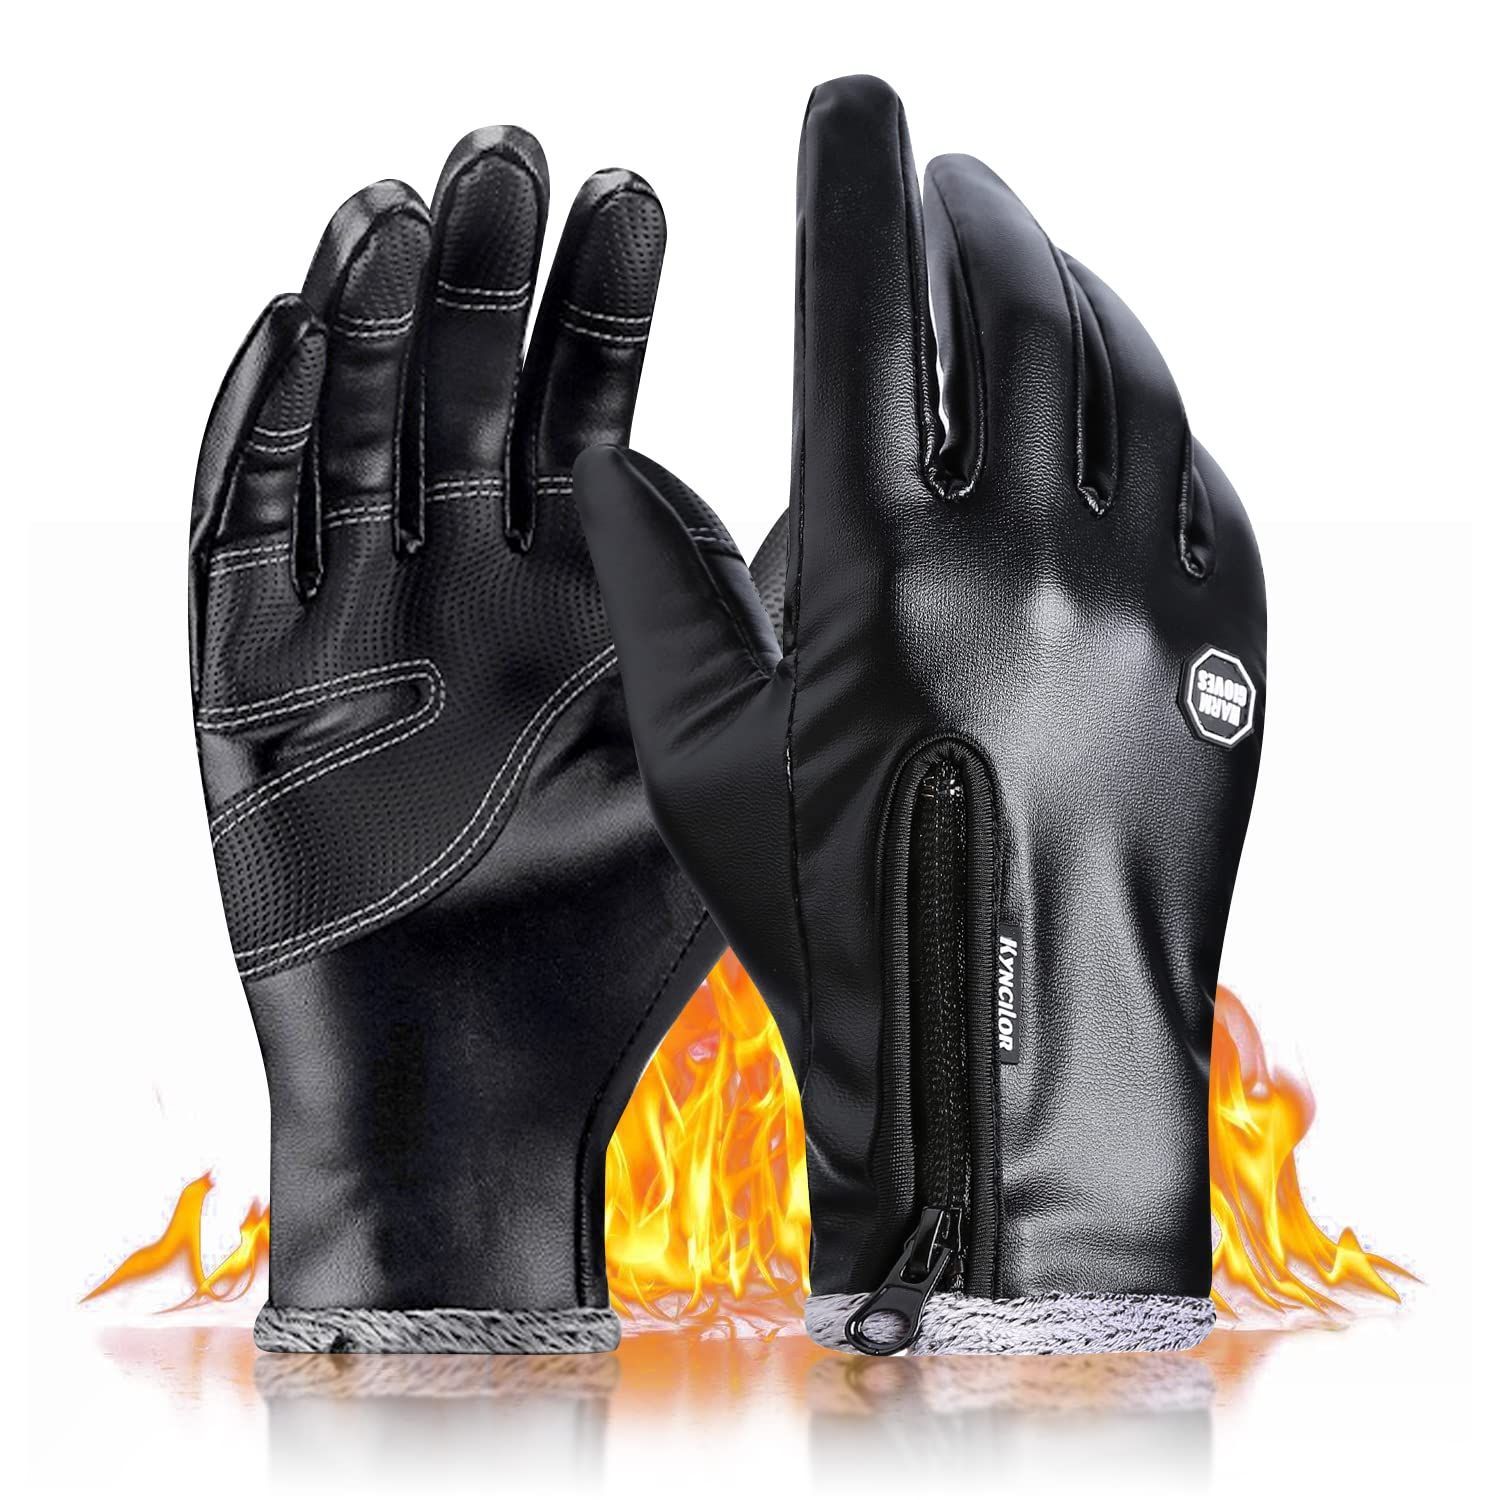 特価商品】バイク手袋 スマホ対応 保温強化 長い袖 防寒 暖かい 防水